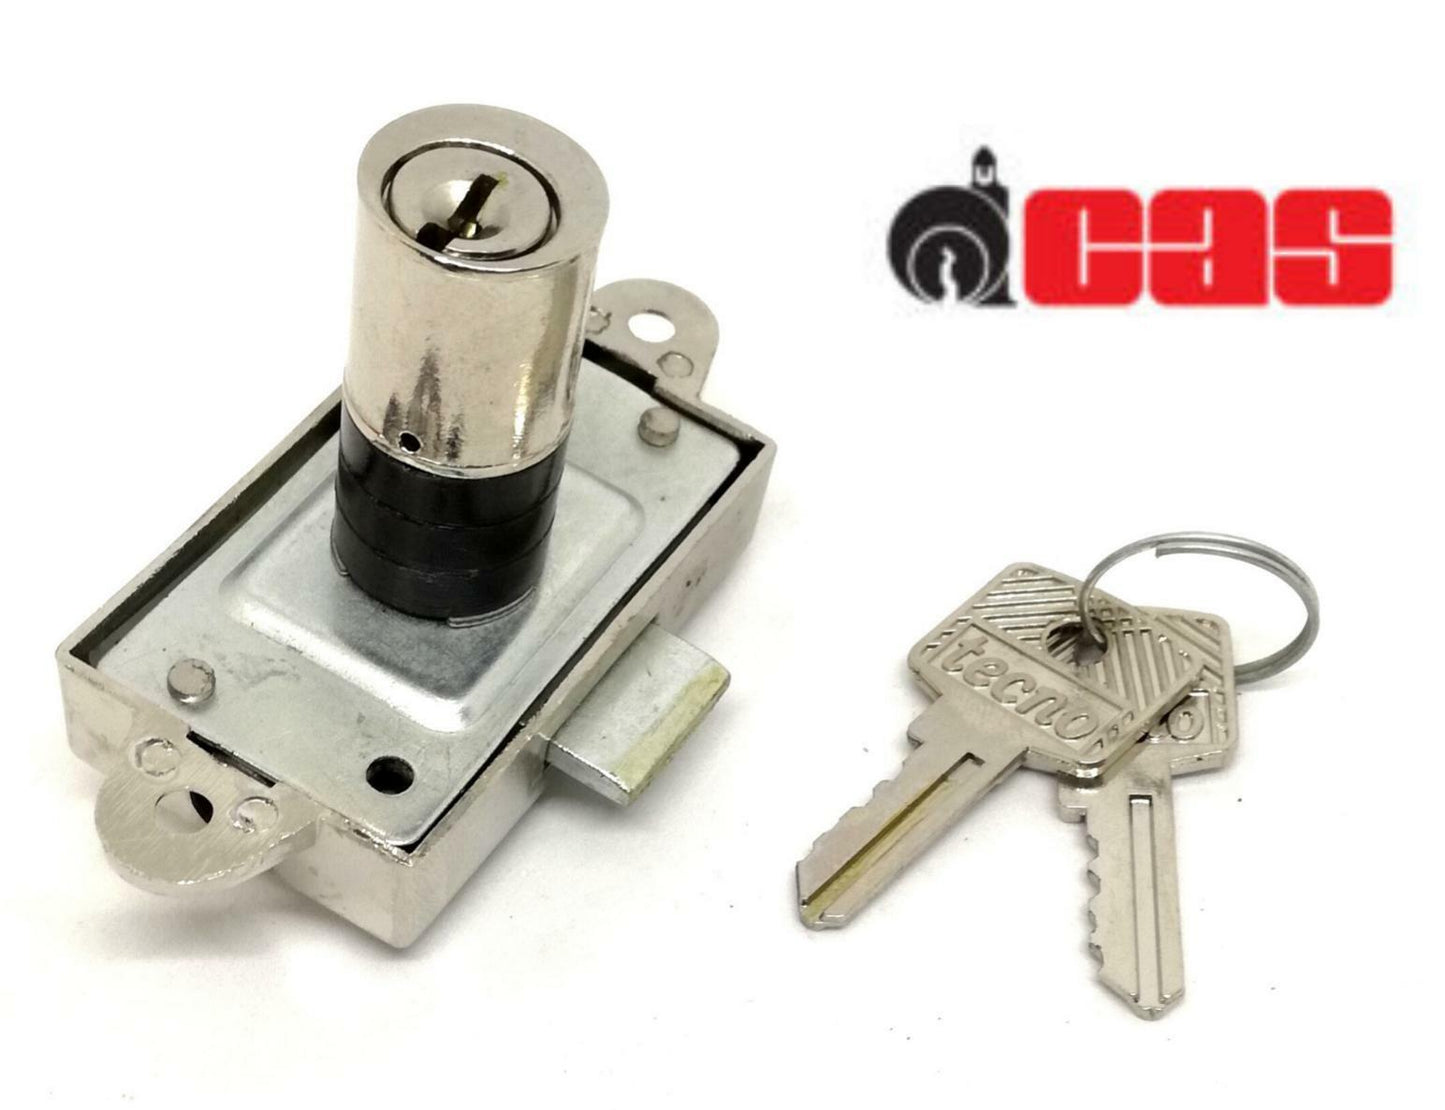 Serratura CAS 223C da applicare Aste Rotanti cilindro H.mm.30 marchio Tecno Lock